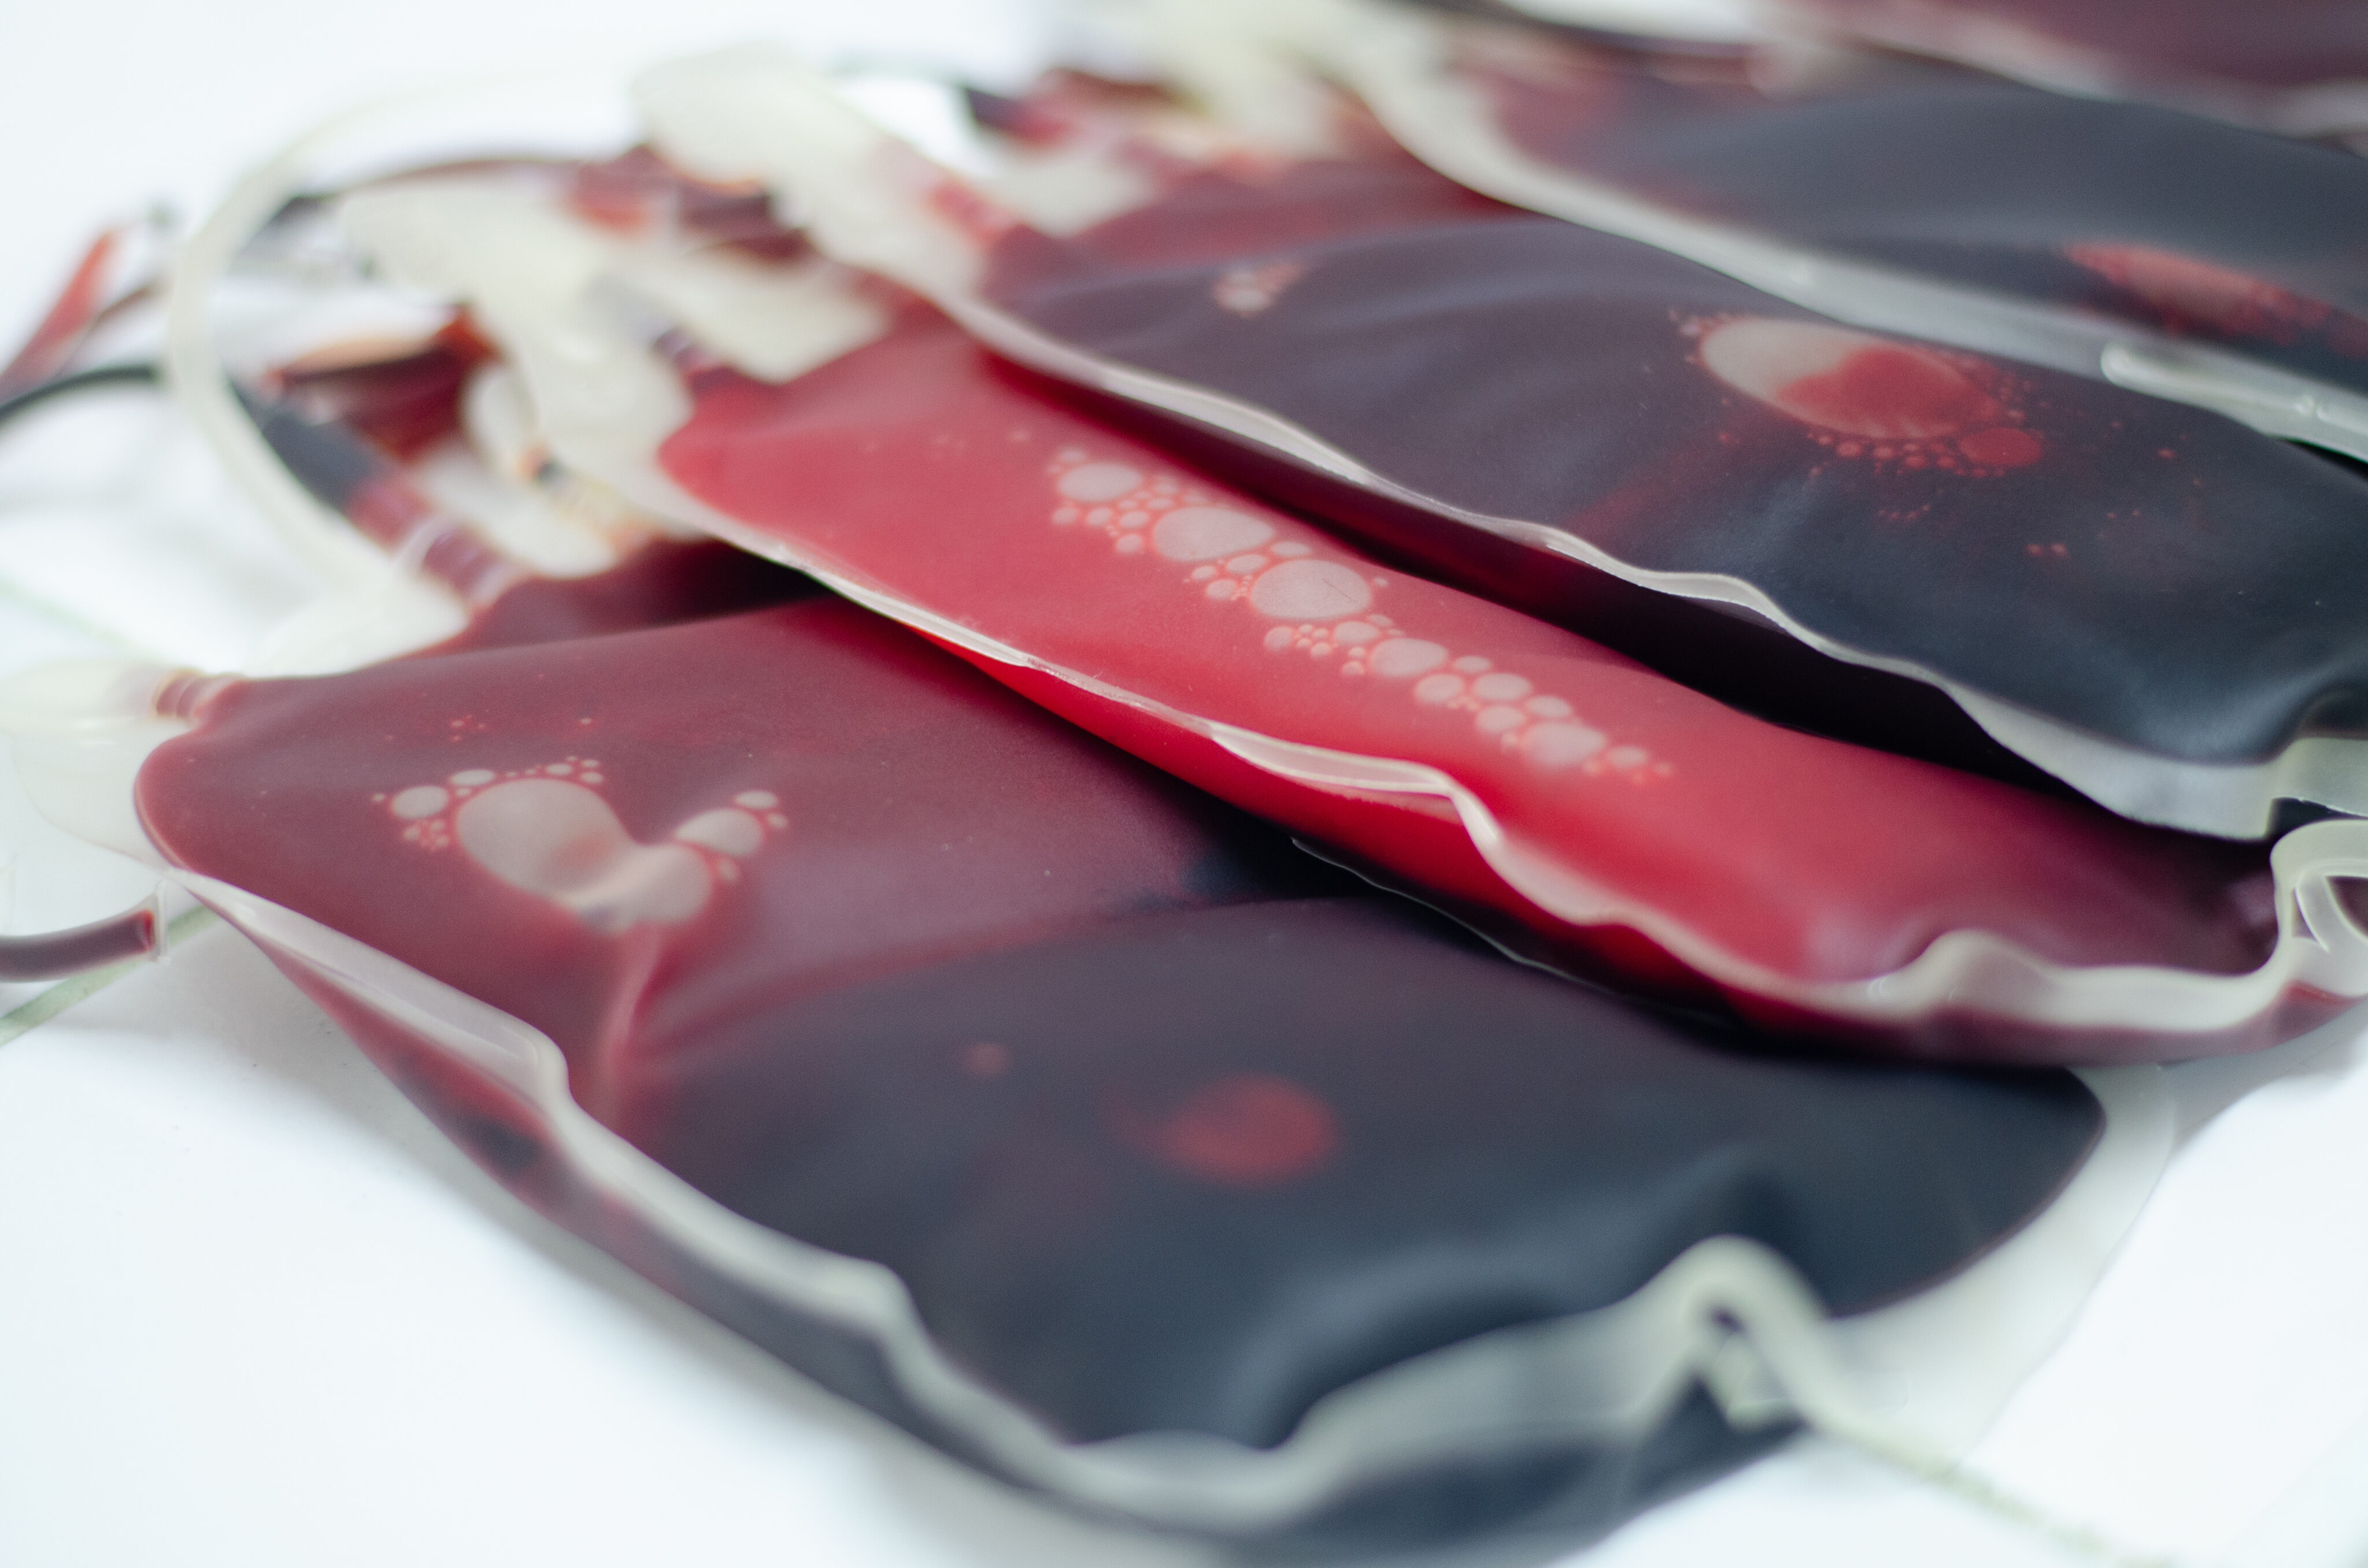 Blutgruppe Rhesusfaktor: mehrere Beutel mit Blut liegen nebeneinander